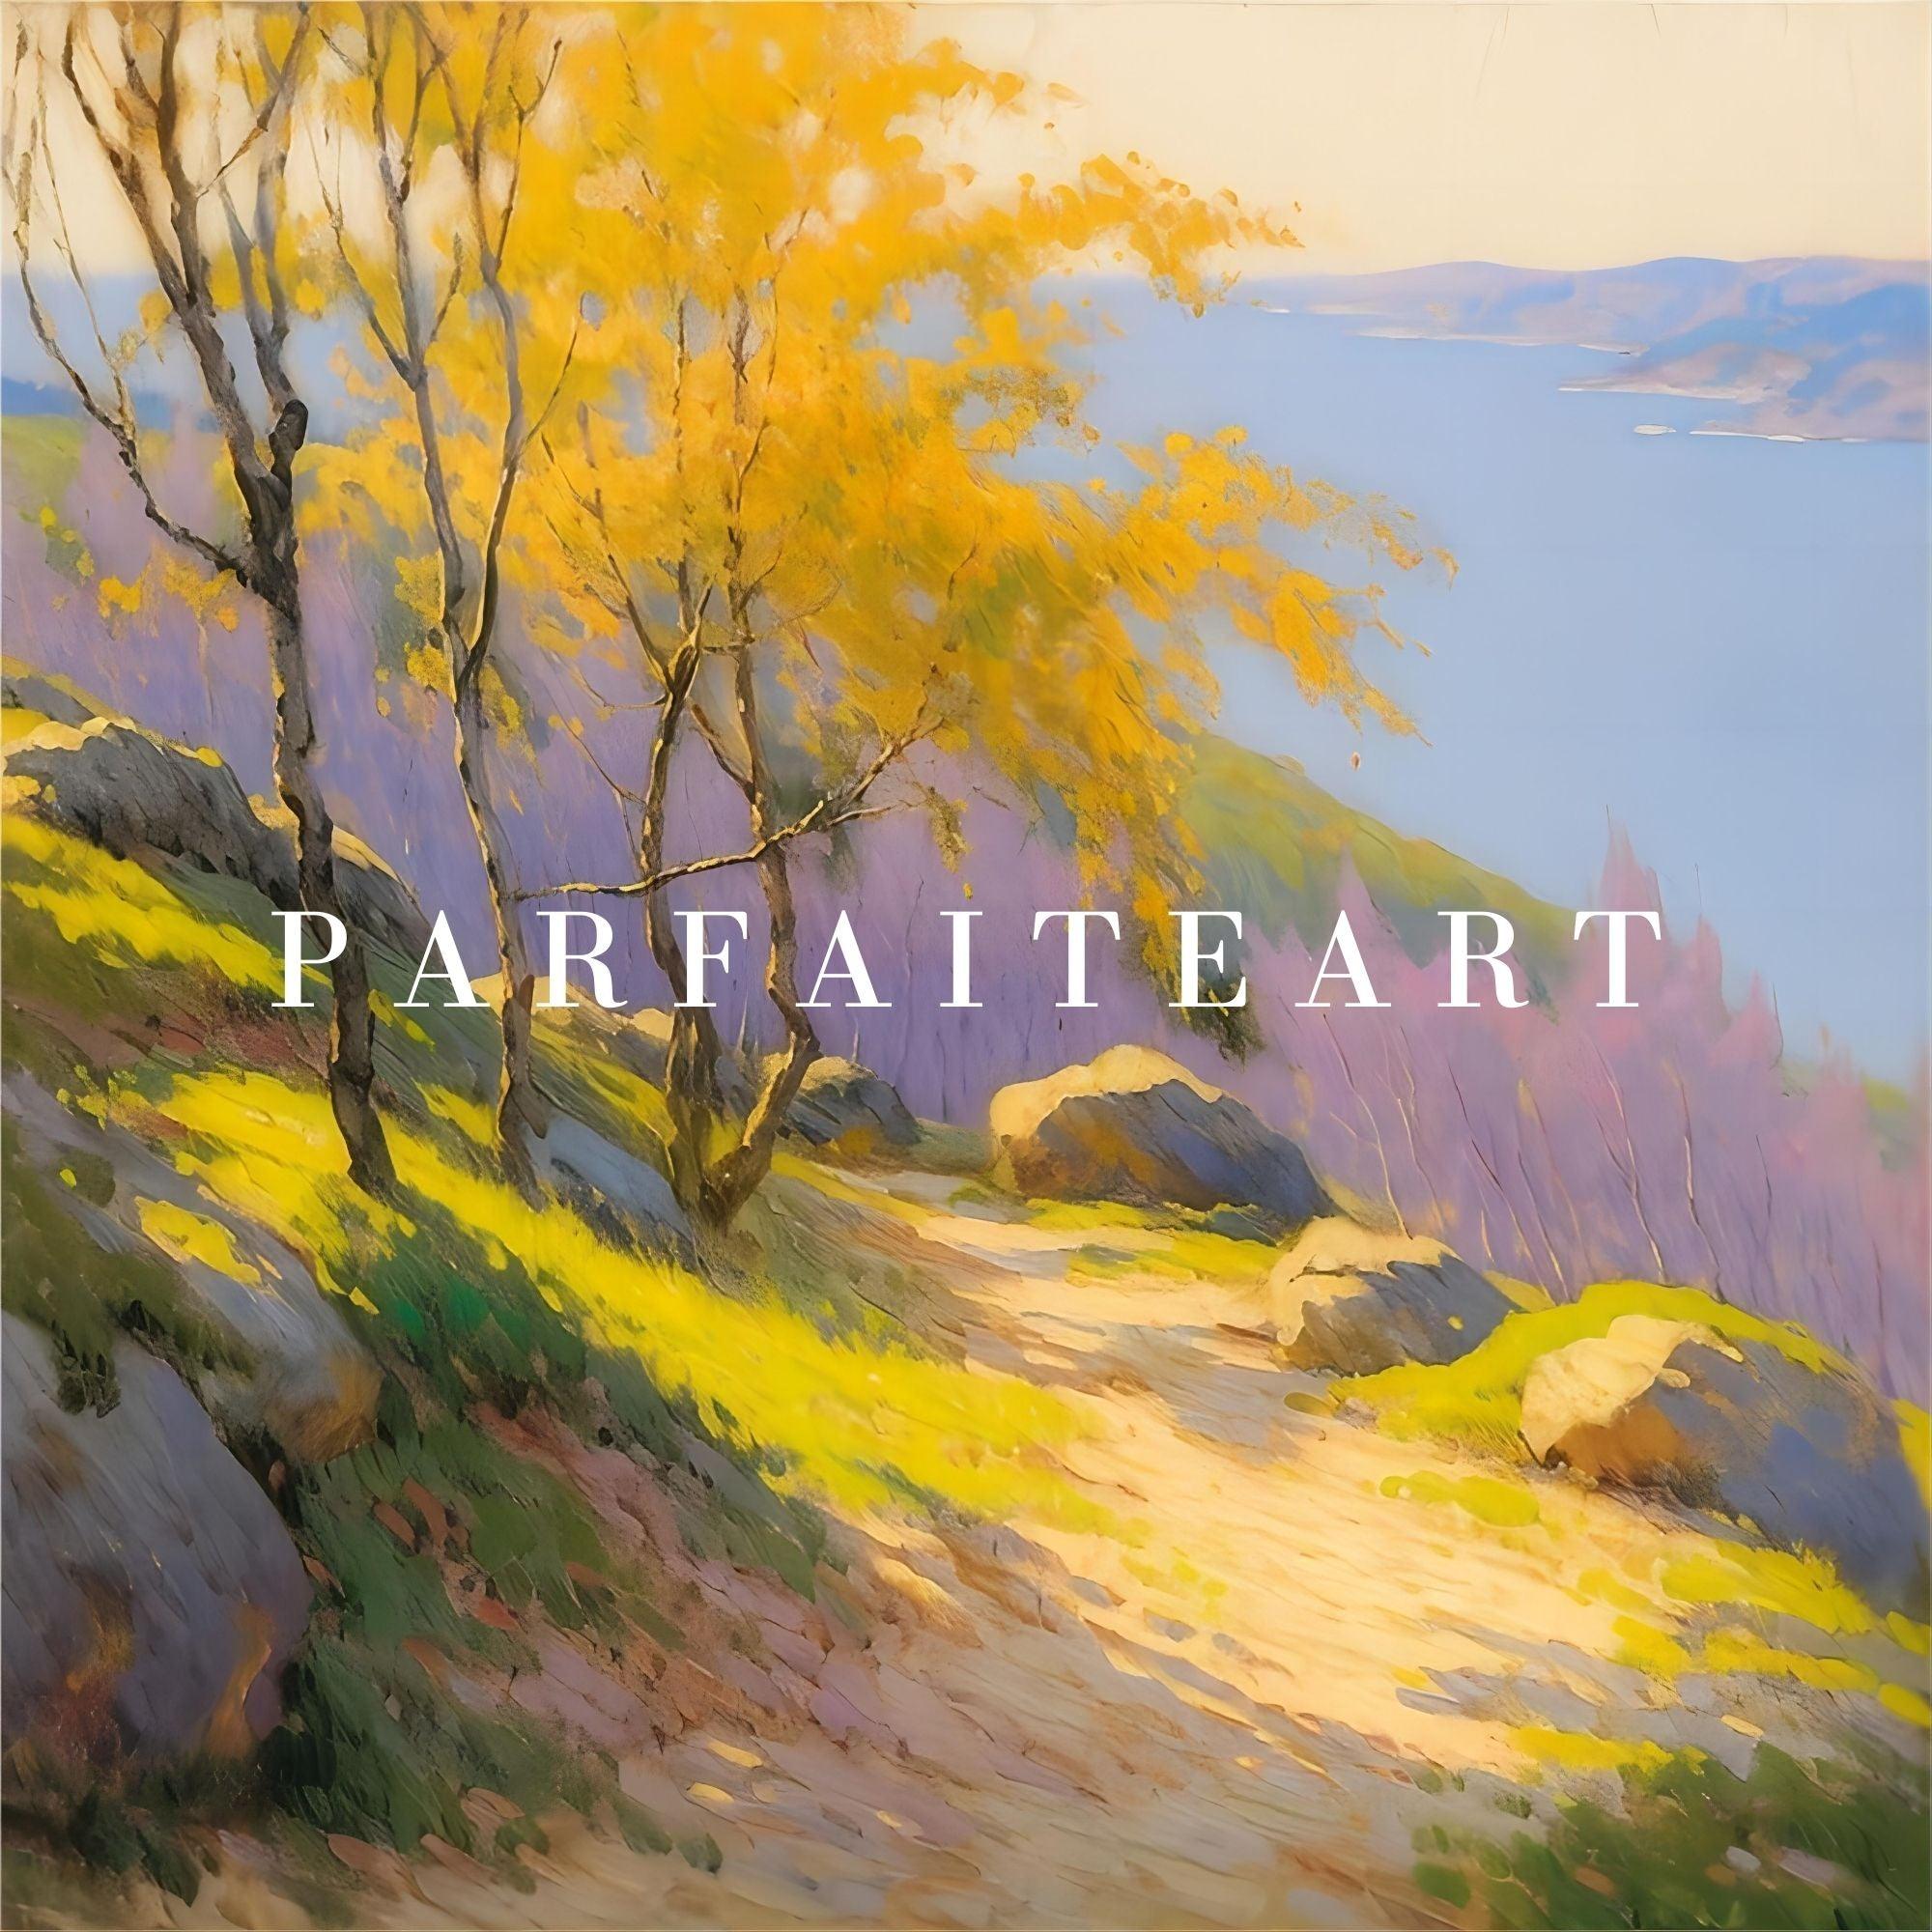 Impressionism,Canvas Print,Landscape,IC 1 - ParfaiteArt